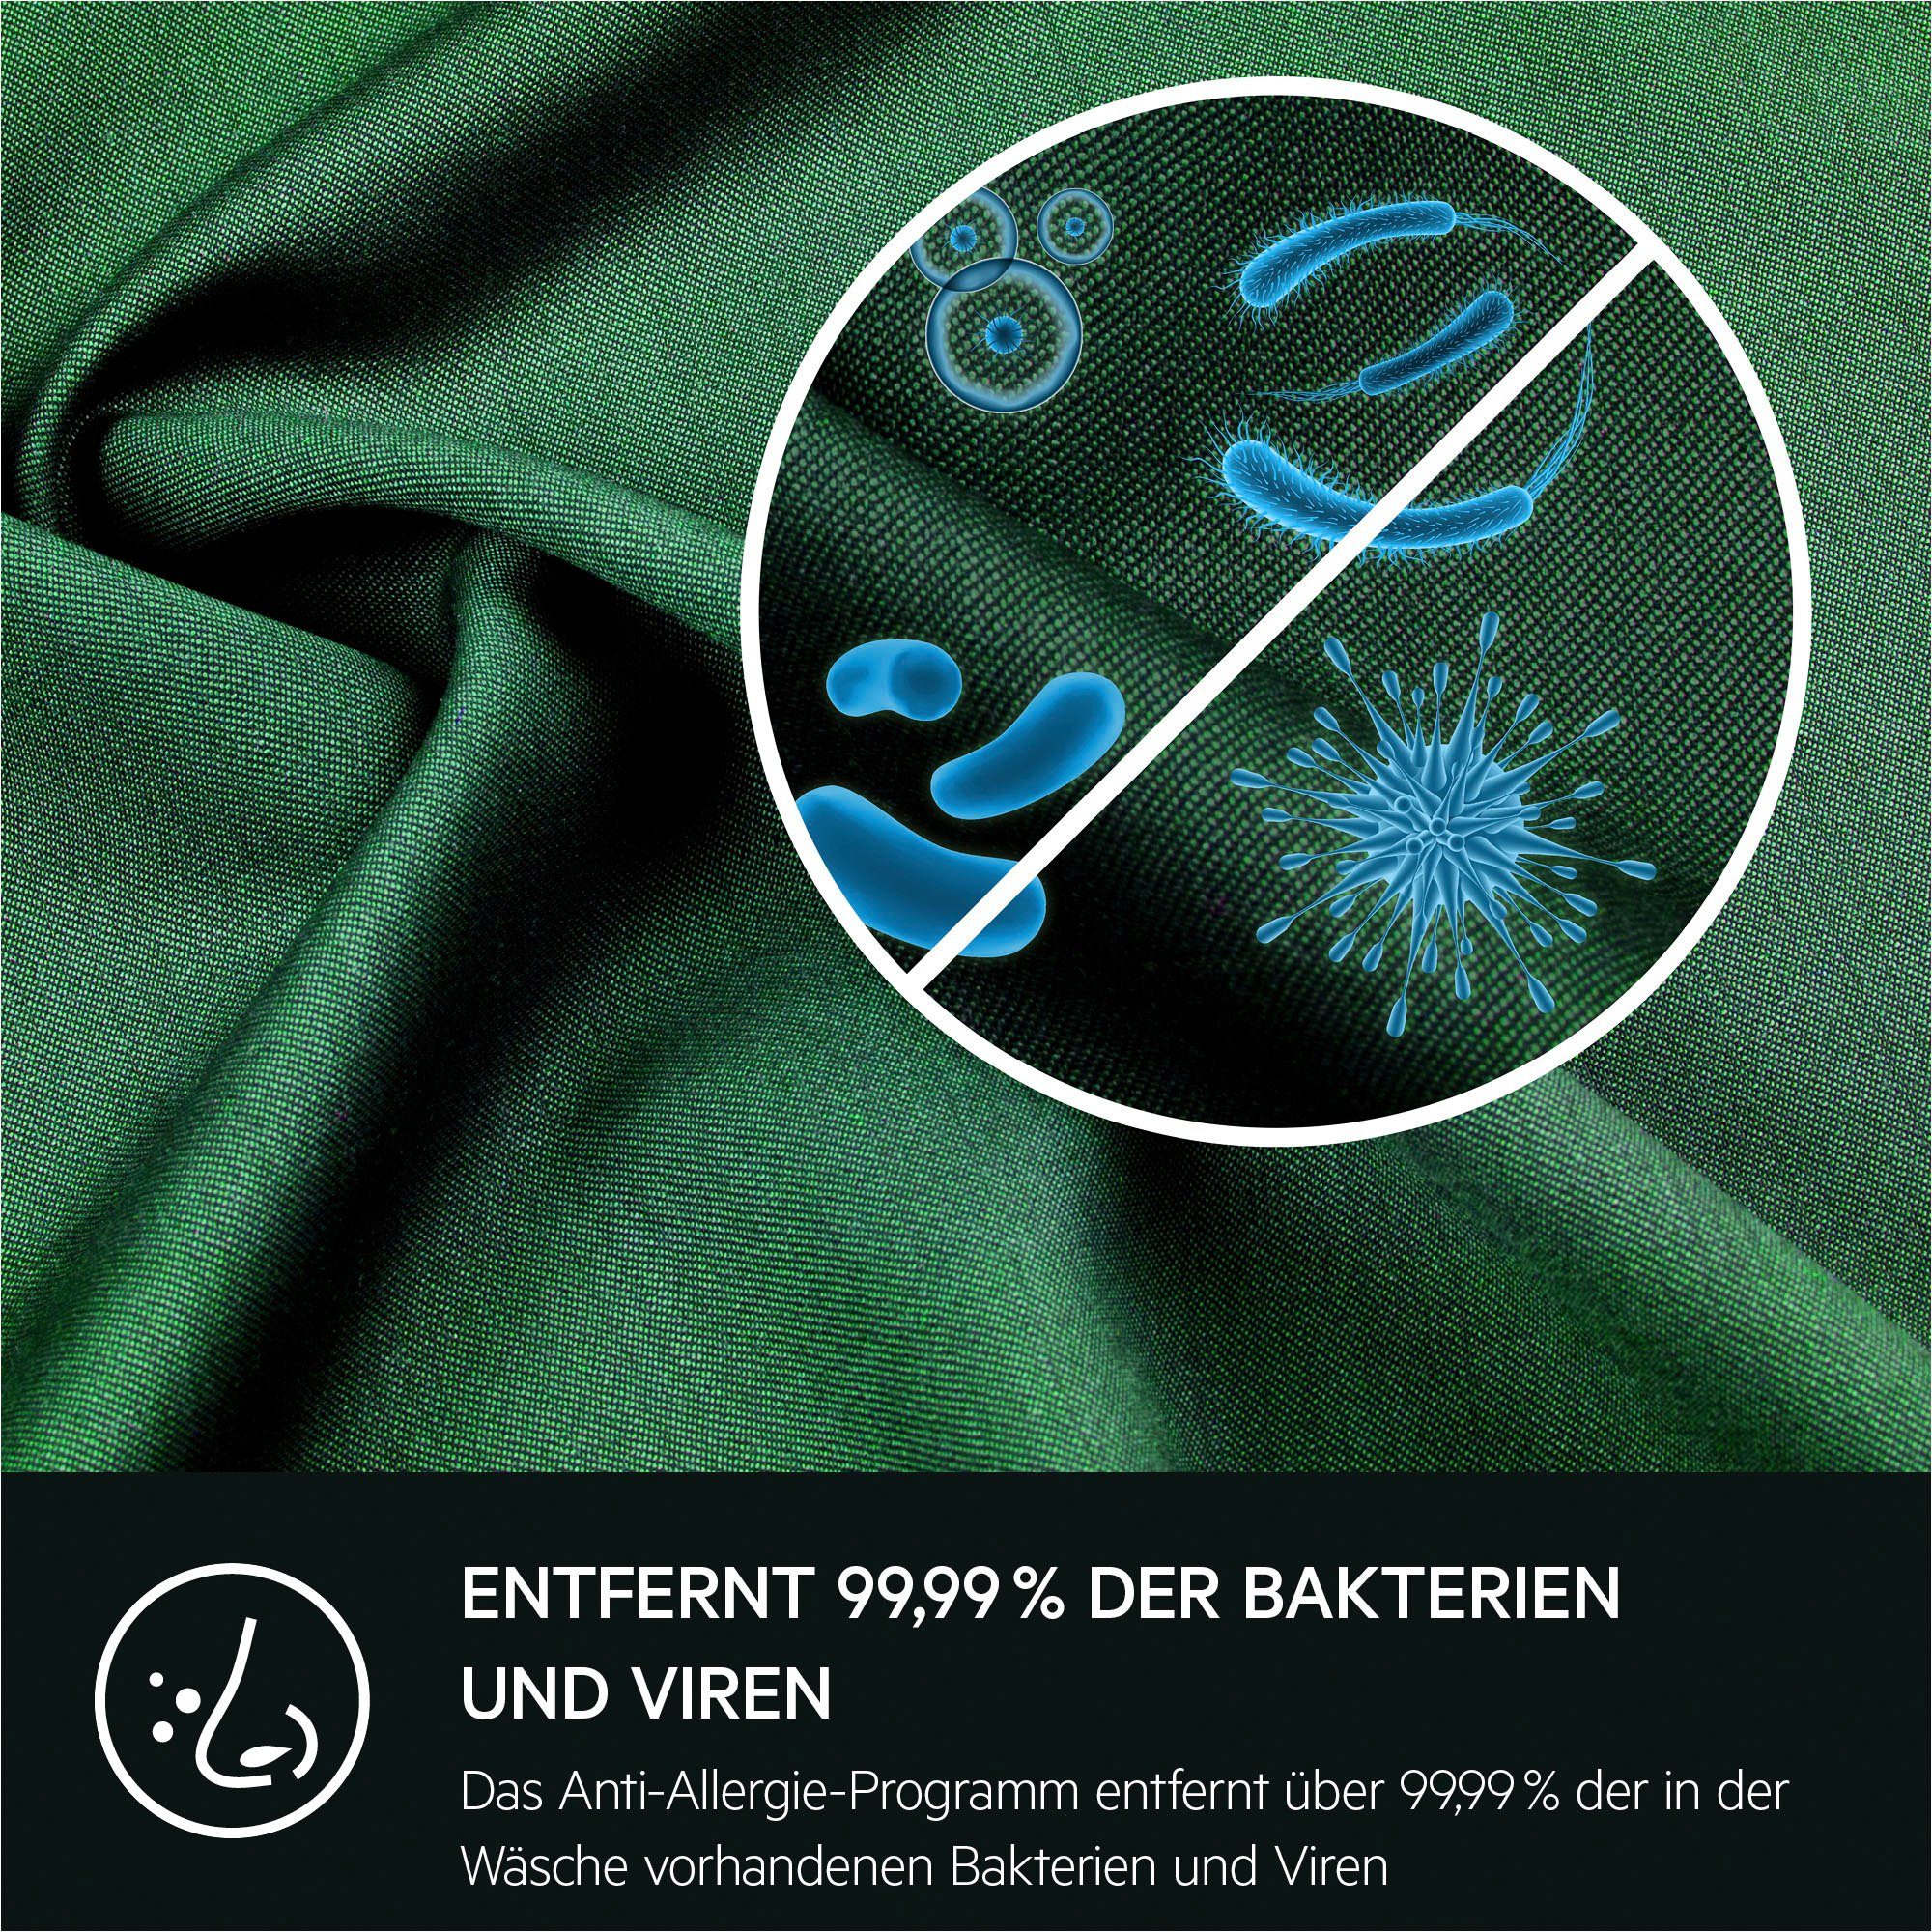 AEG Waschmaschine 914913590, mit L6FBA51480 Dampf Anti-Allergie 1400 U/min, Programm kg, 8 Hygiene